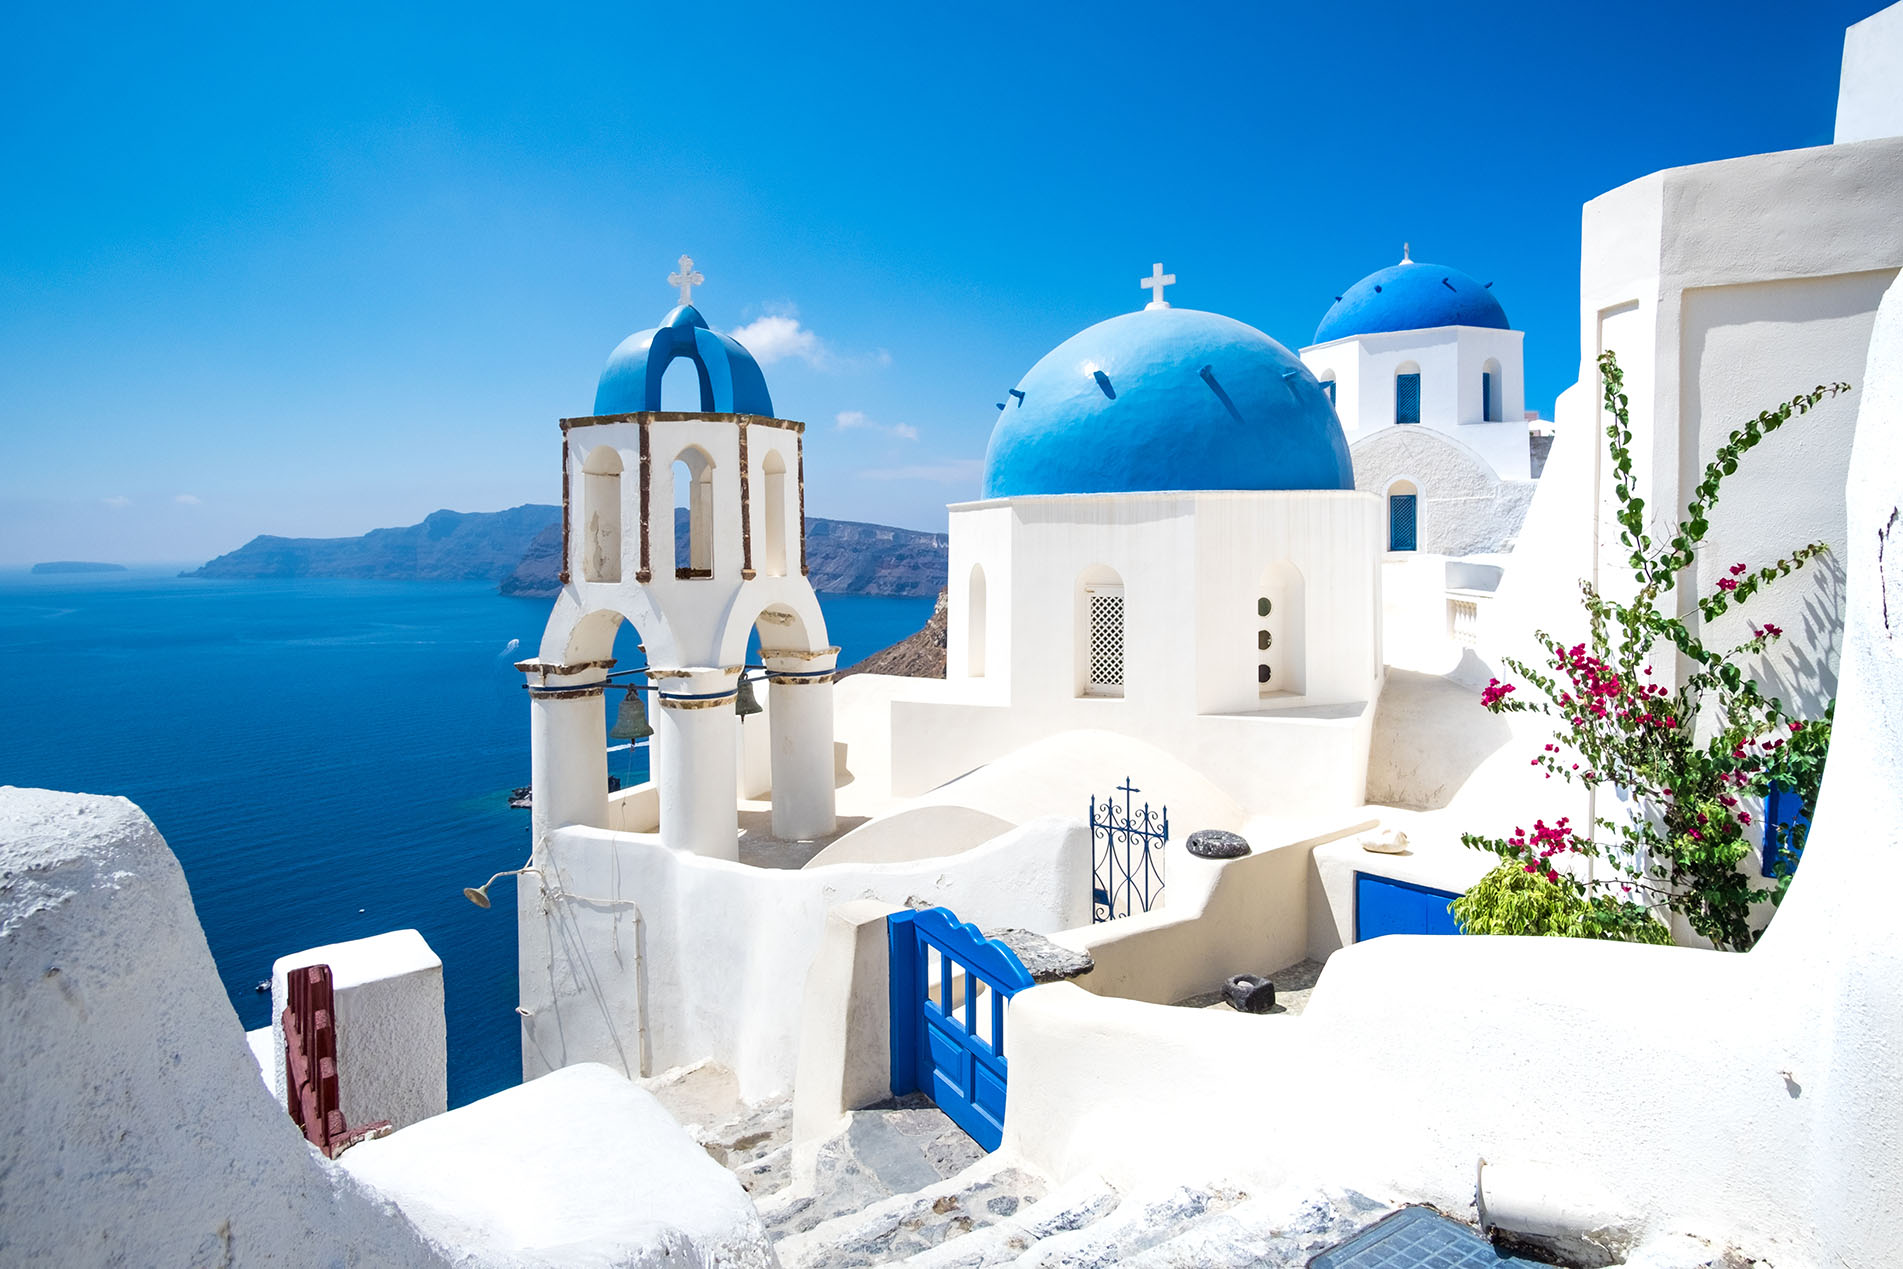 Seajets Crete, – Tour-Crete Greece Santorini trip with | 1 to | day VIP Excursions